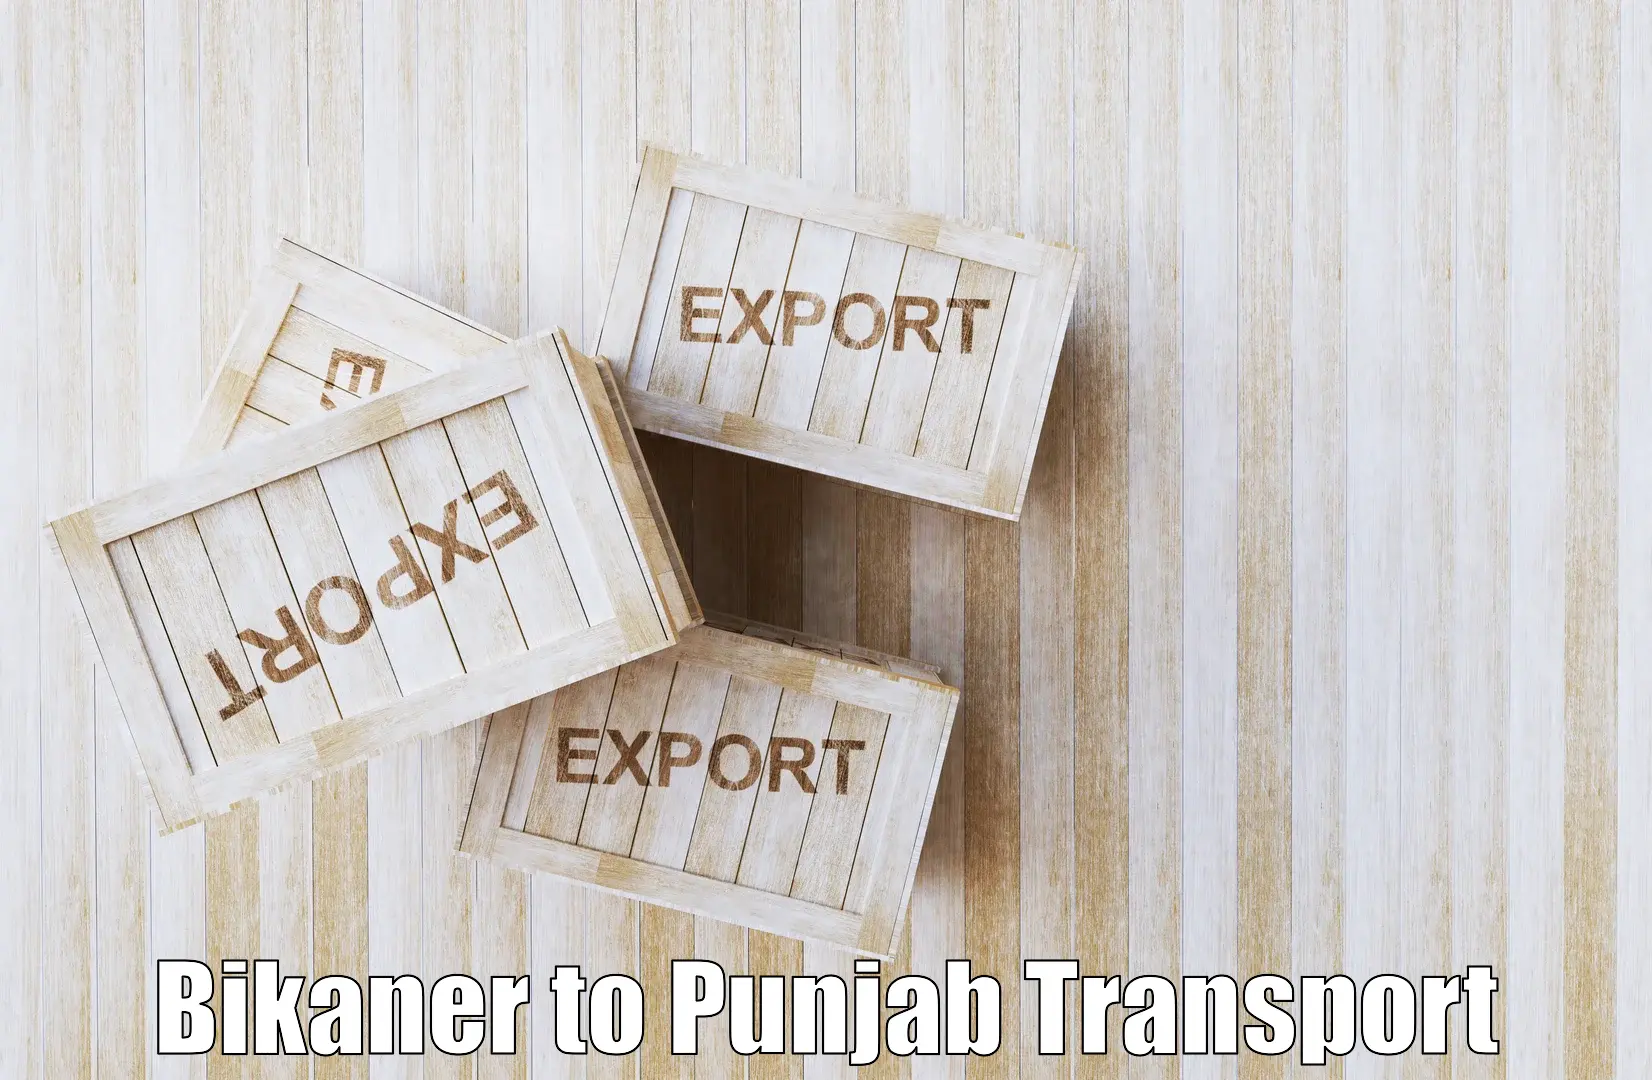 Nearby transport service Bikaner to IIT Ropar